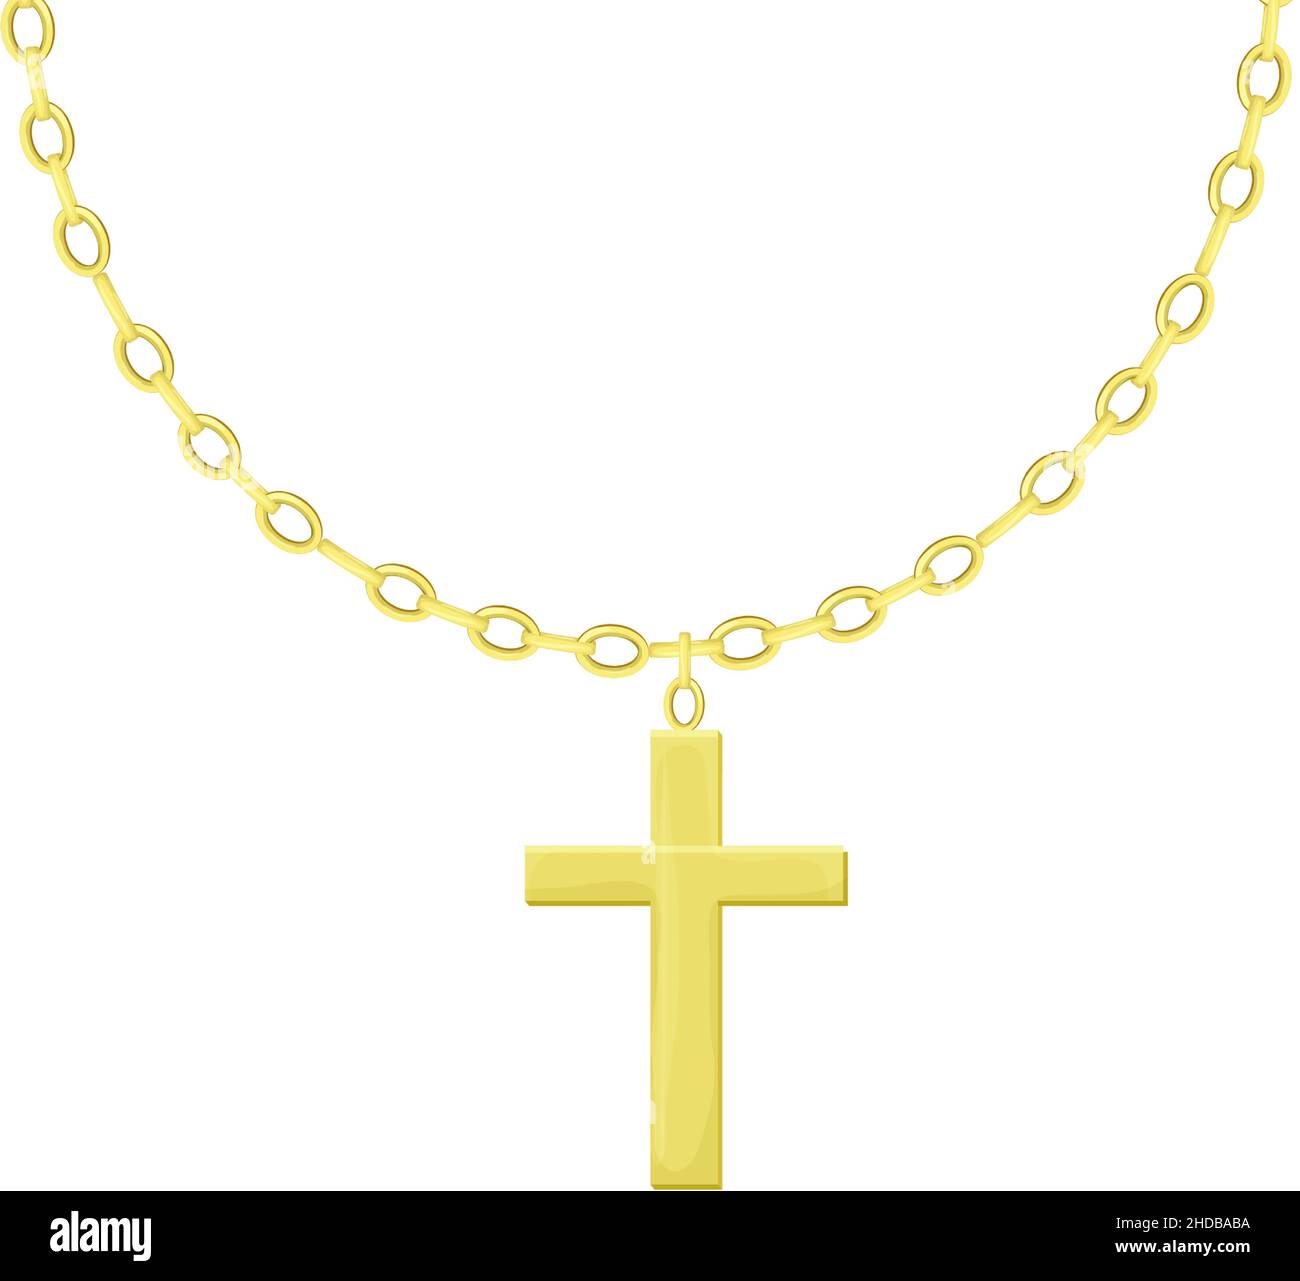 Gold Kreuz Anhänger Halskette Stock-Vektorgrafiken kaufen - Alamy